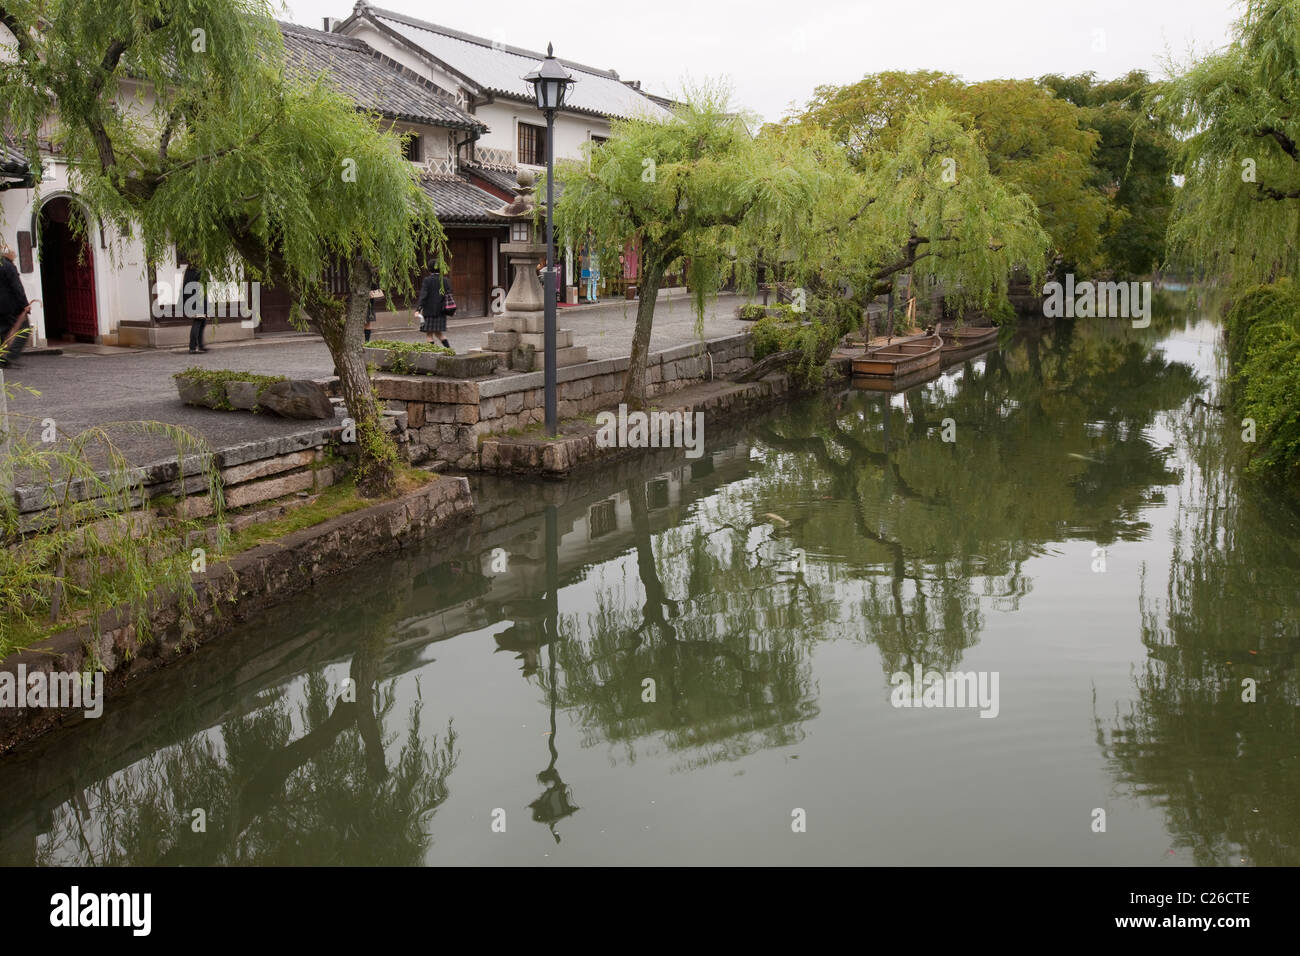 Kanal, gesäumt von Geschäften und Restaurants im historischen Bezirk Bikan, Kurashiki, Japan. Stockfoto